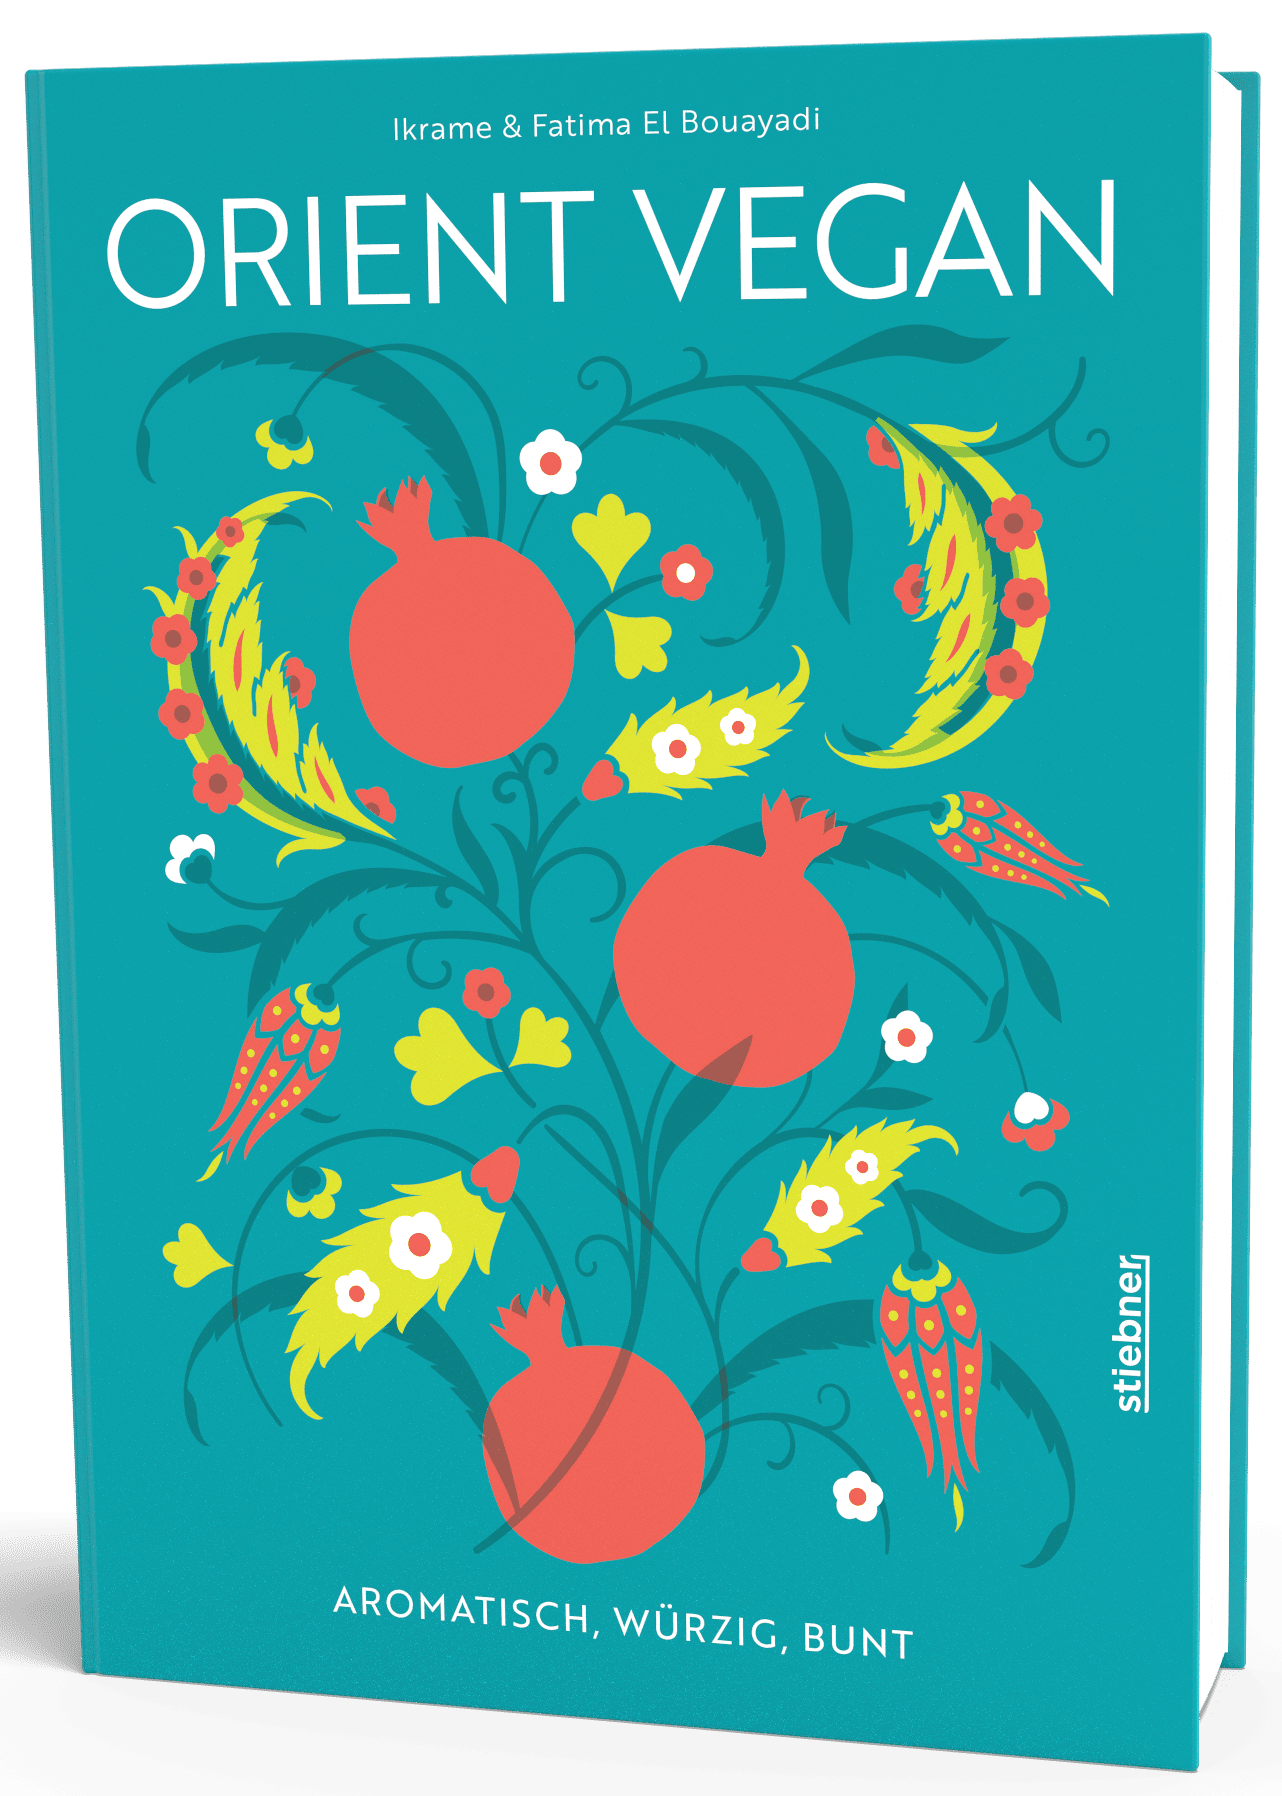 Buchcover "Orient vegan"